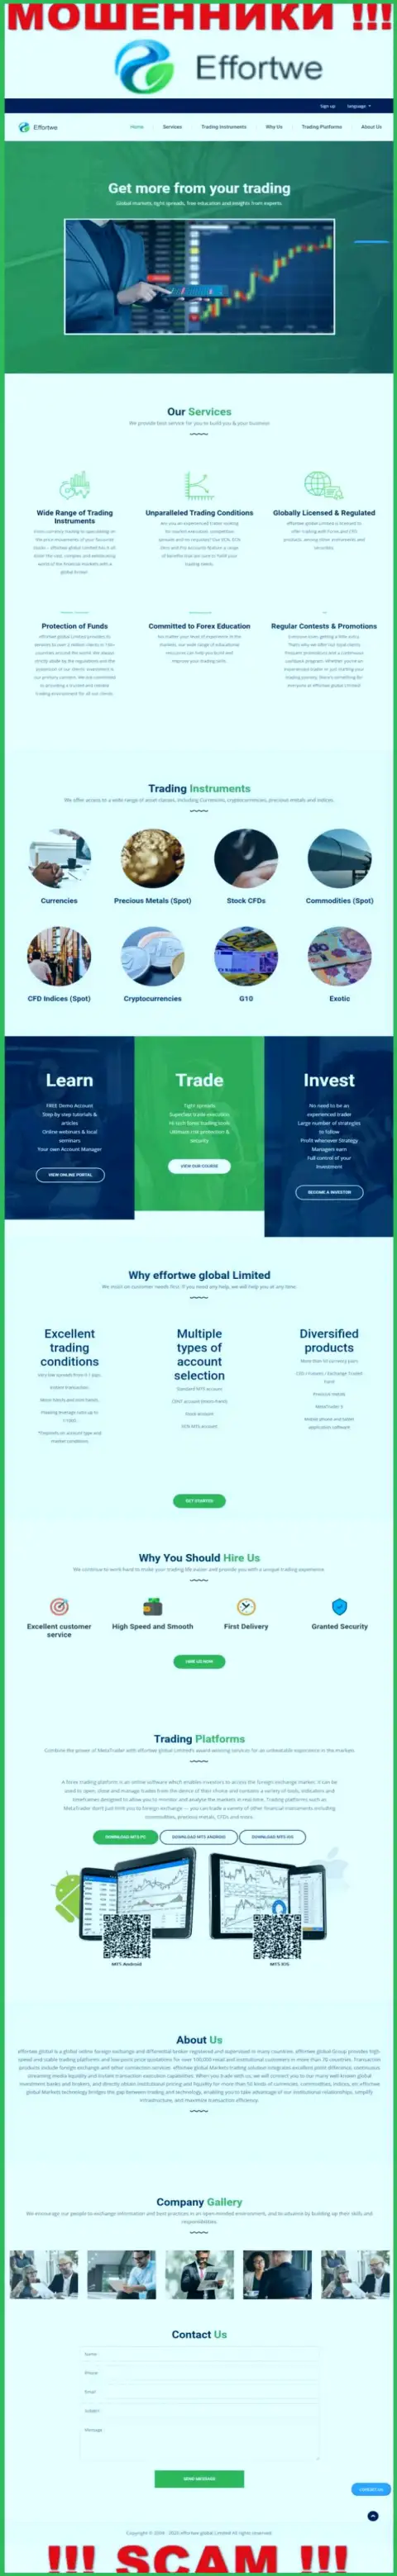 Веб-портал организации Effortwe Global Limited, переполненный ложной информацией